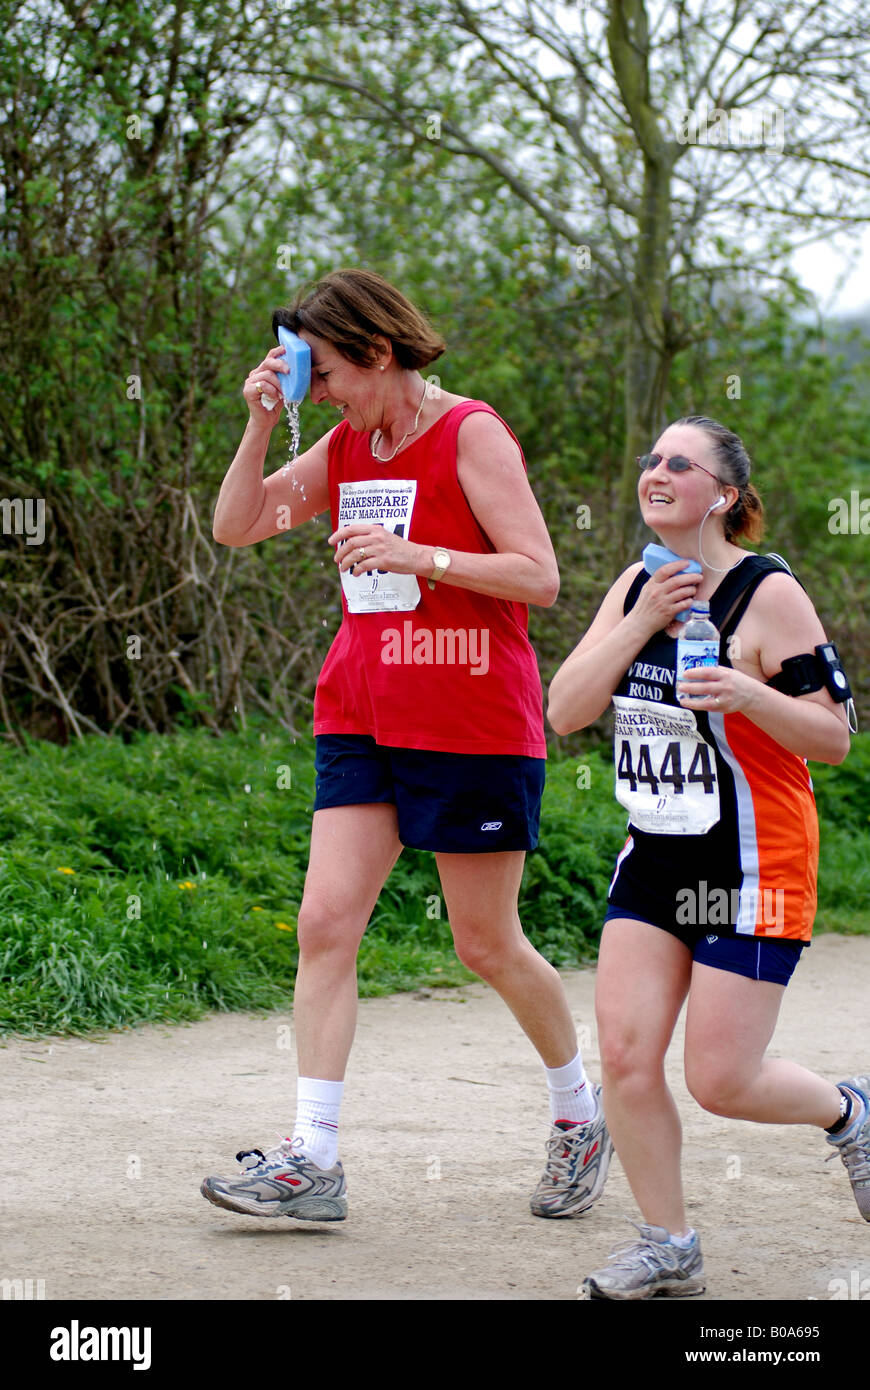 Women cooling down with wet sponges in half marathon race, UK Stock Photo